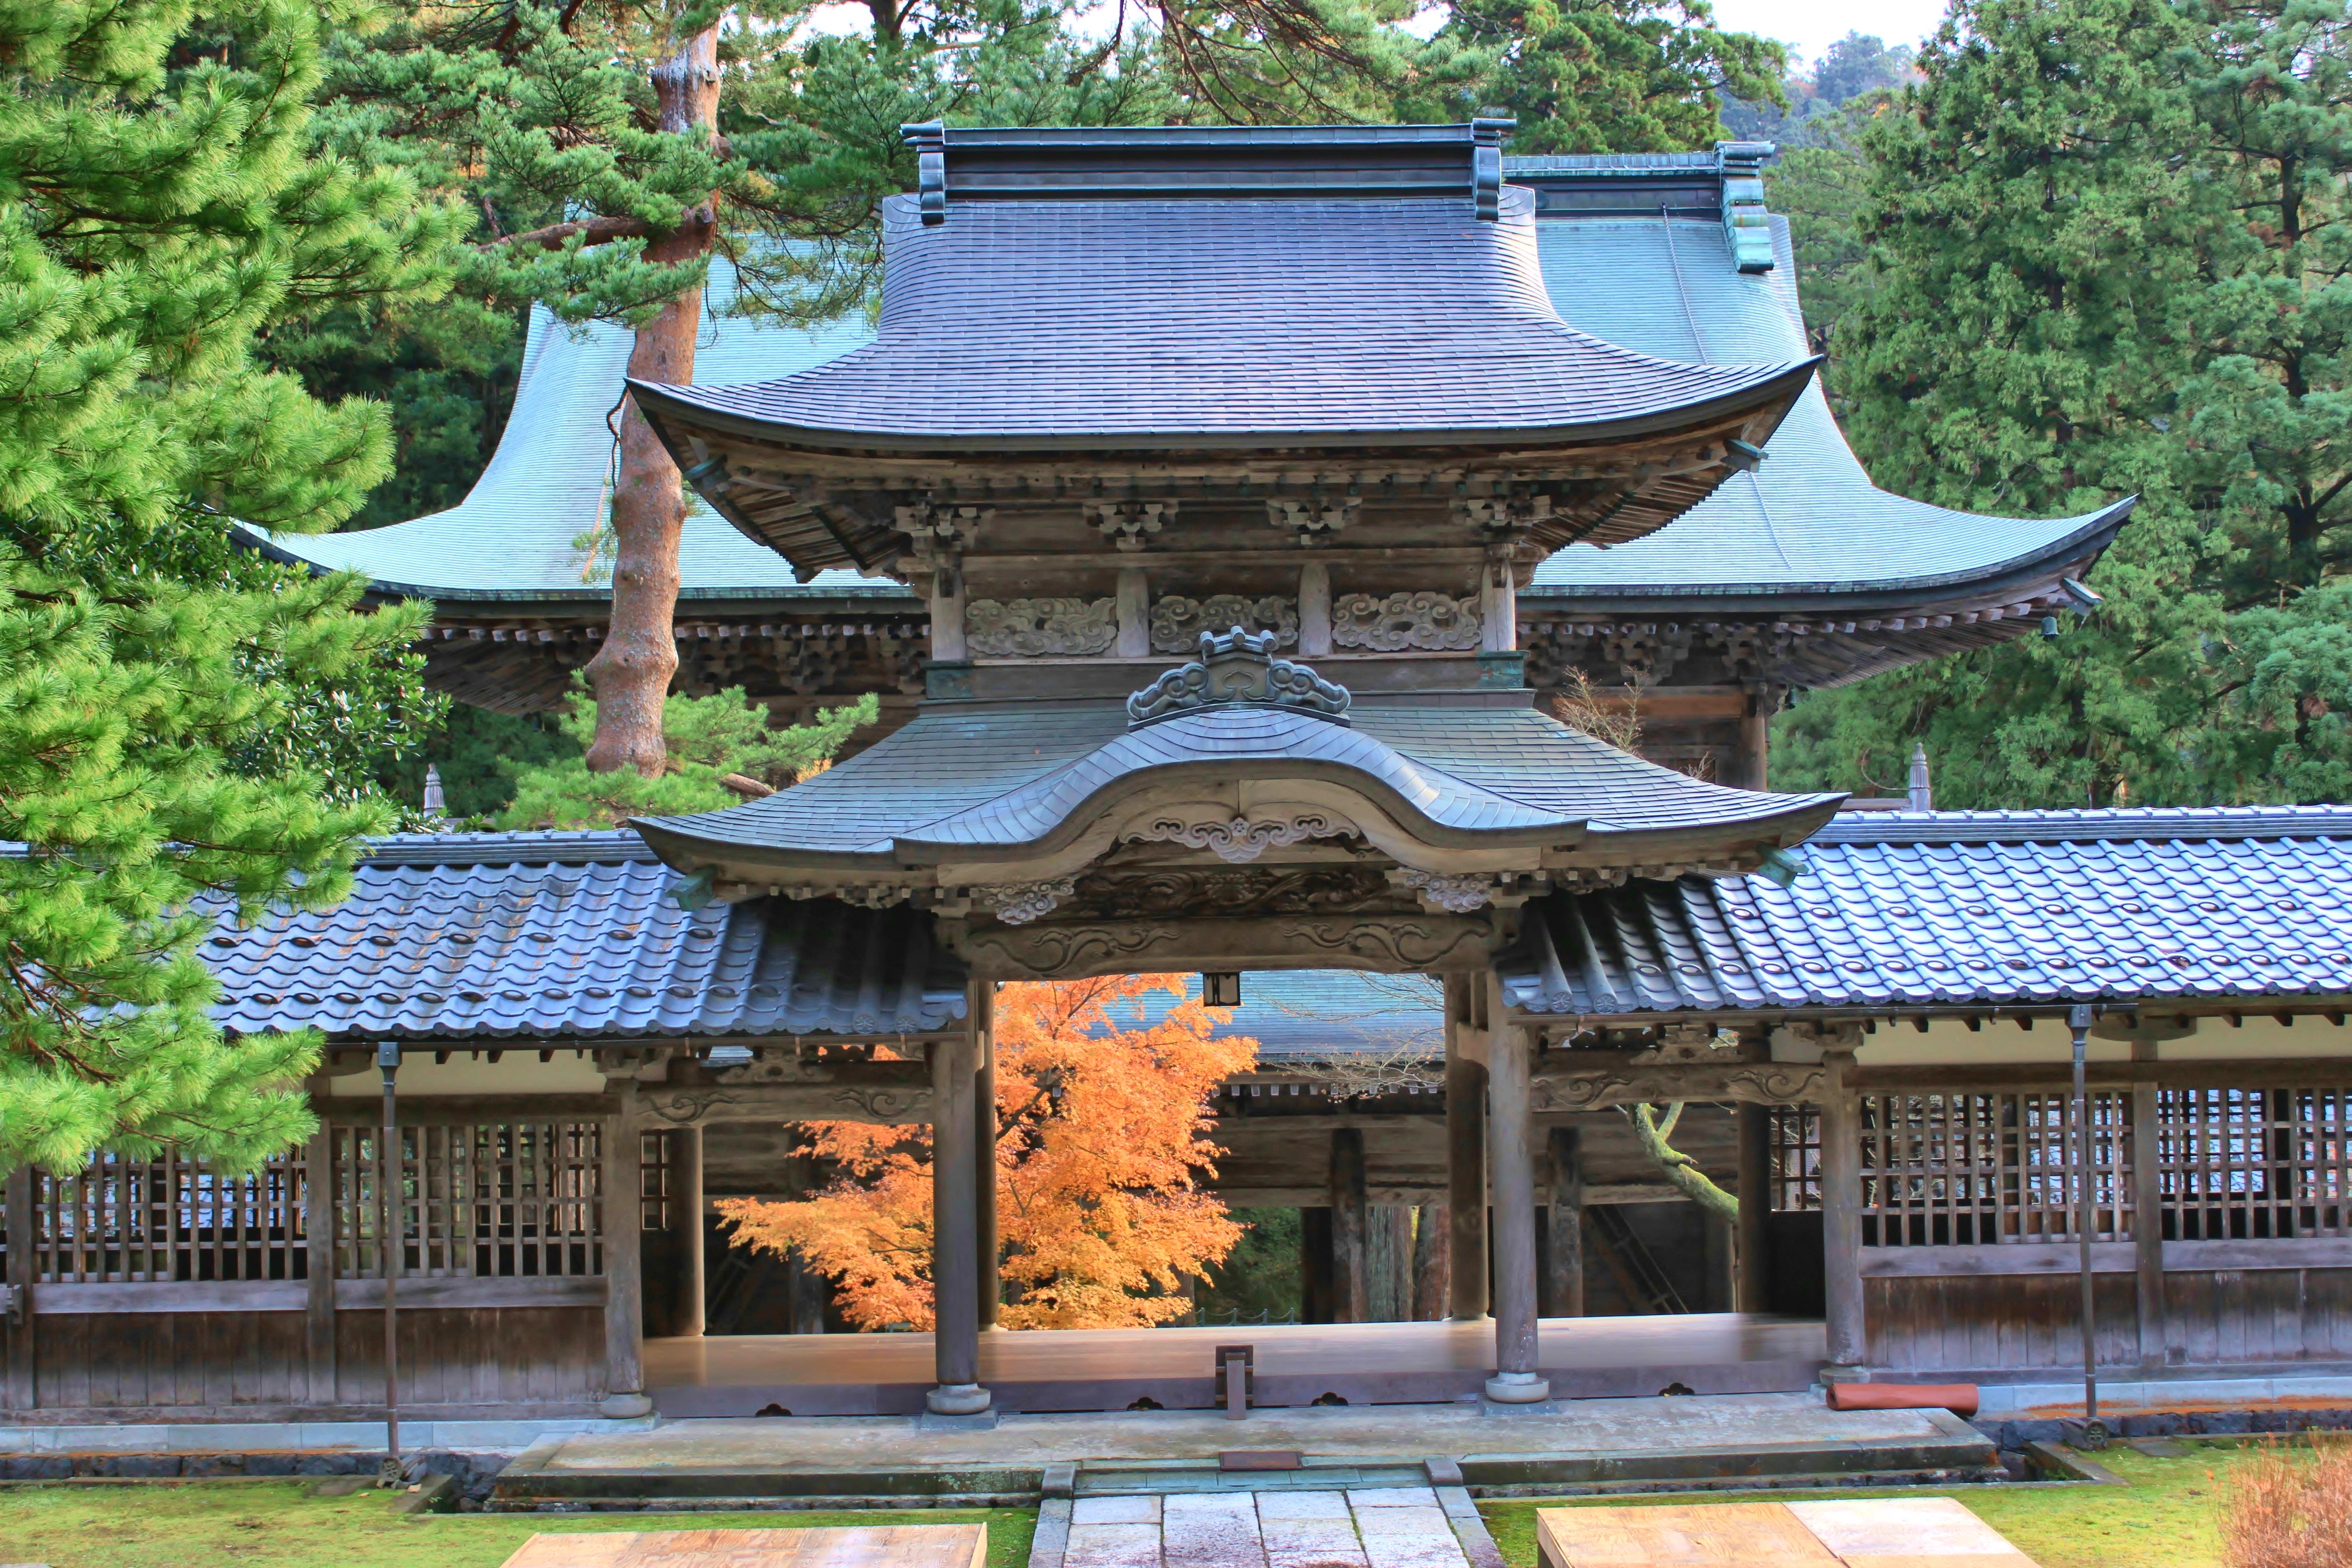 紅葉時期の永平寺の景色は大変美しく、観光客が後を絶ちません。